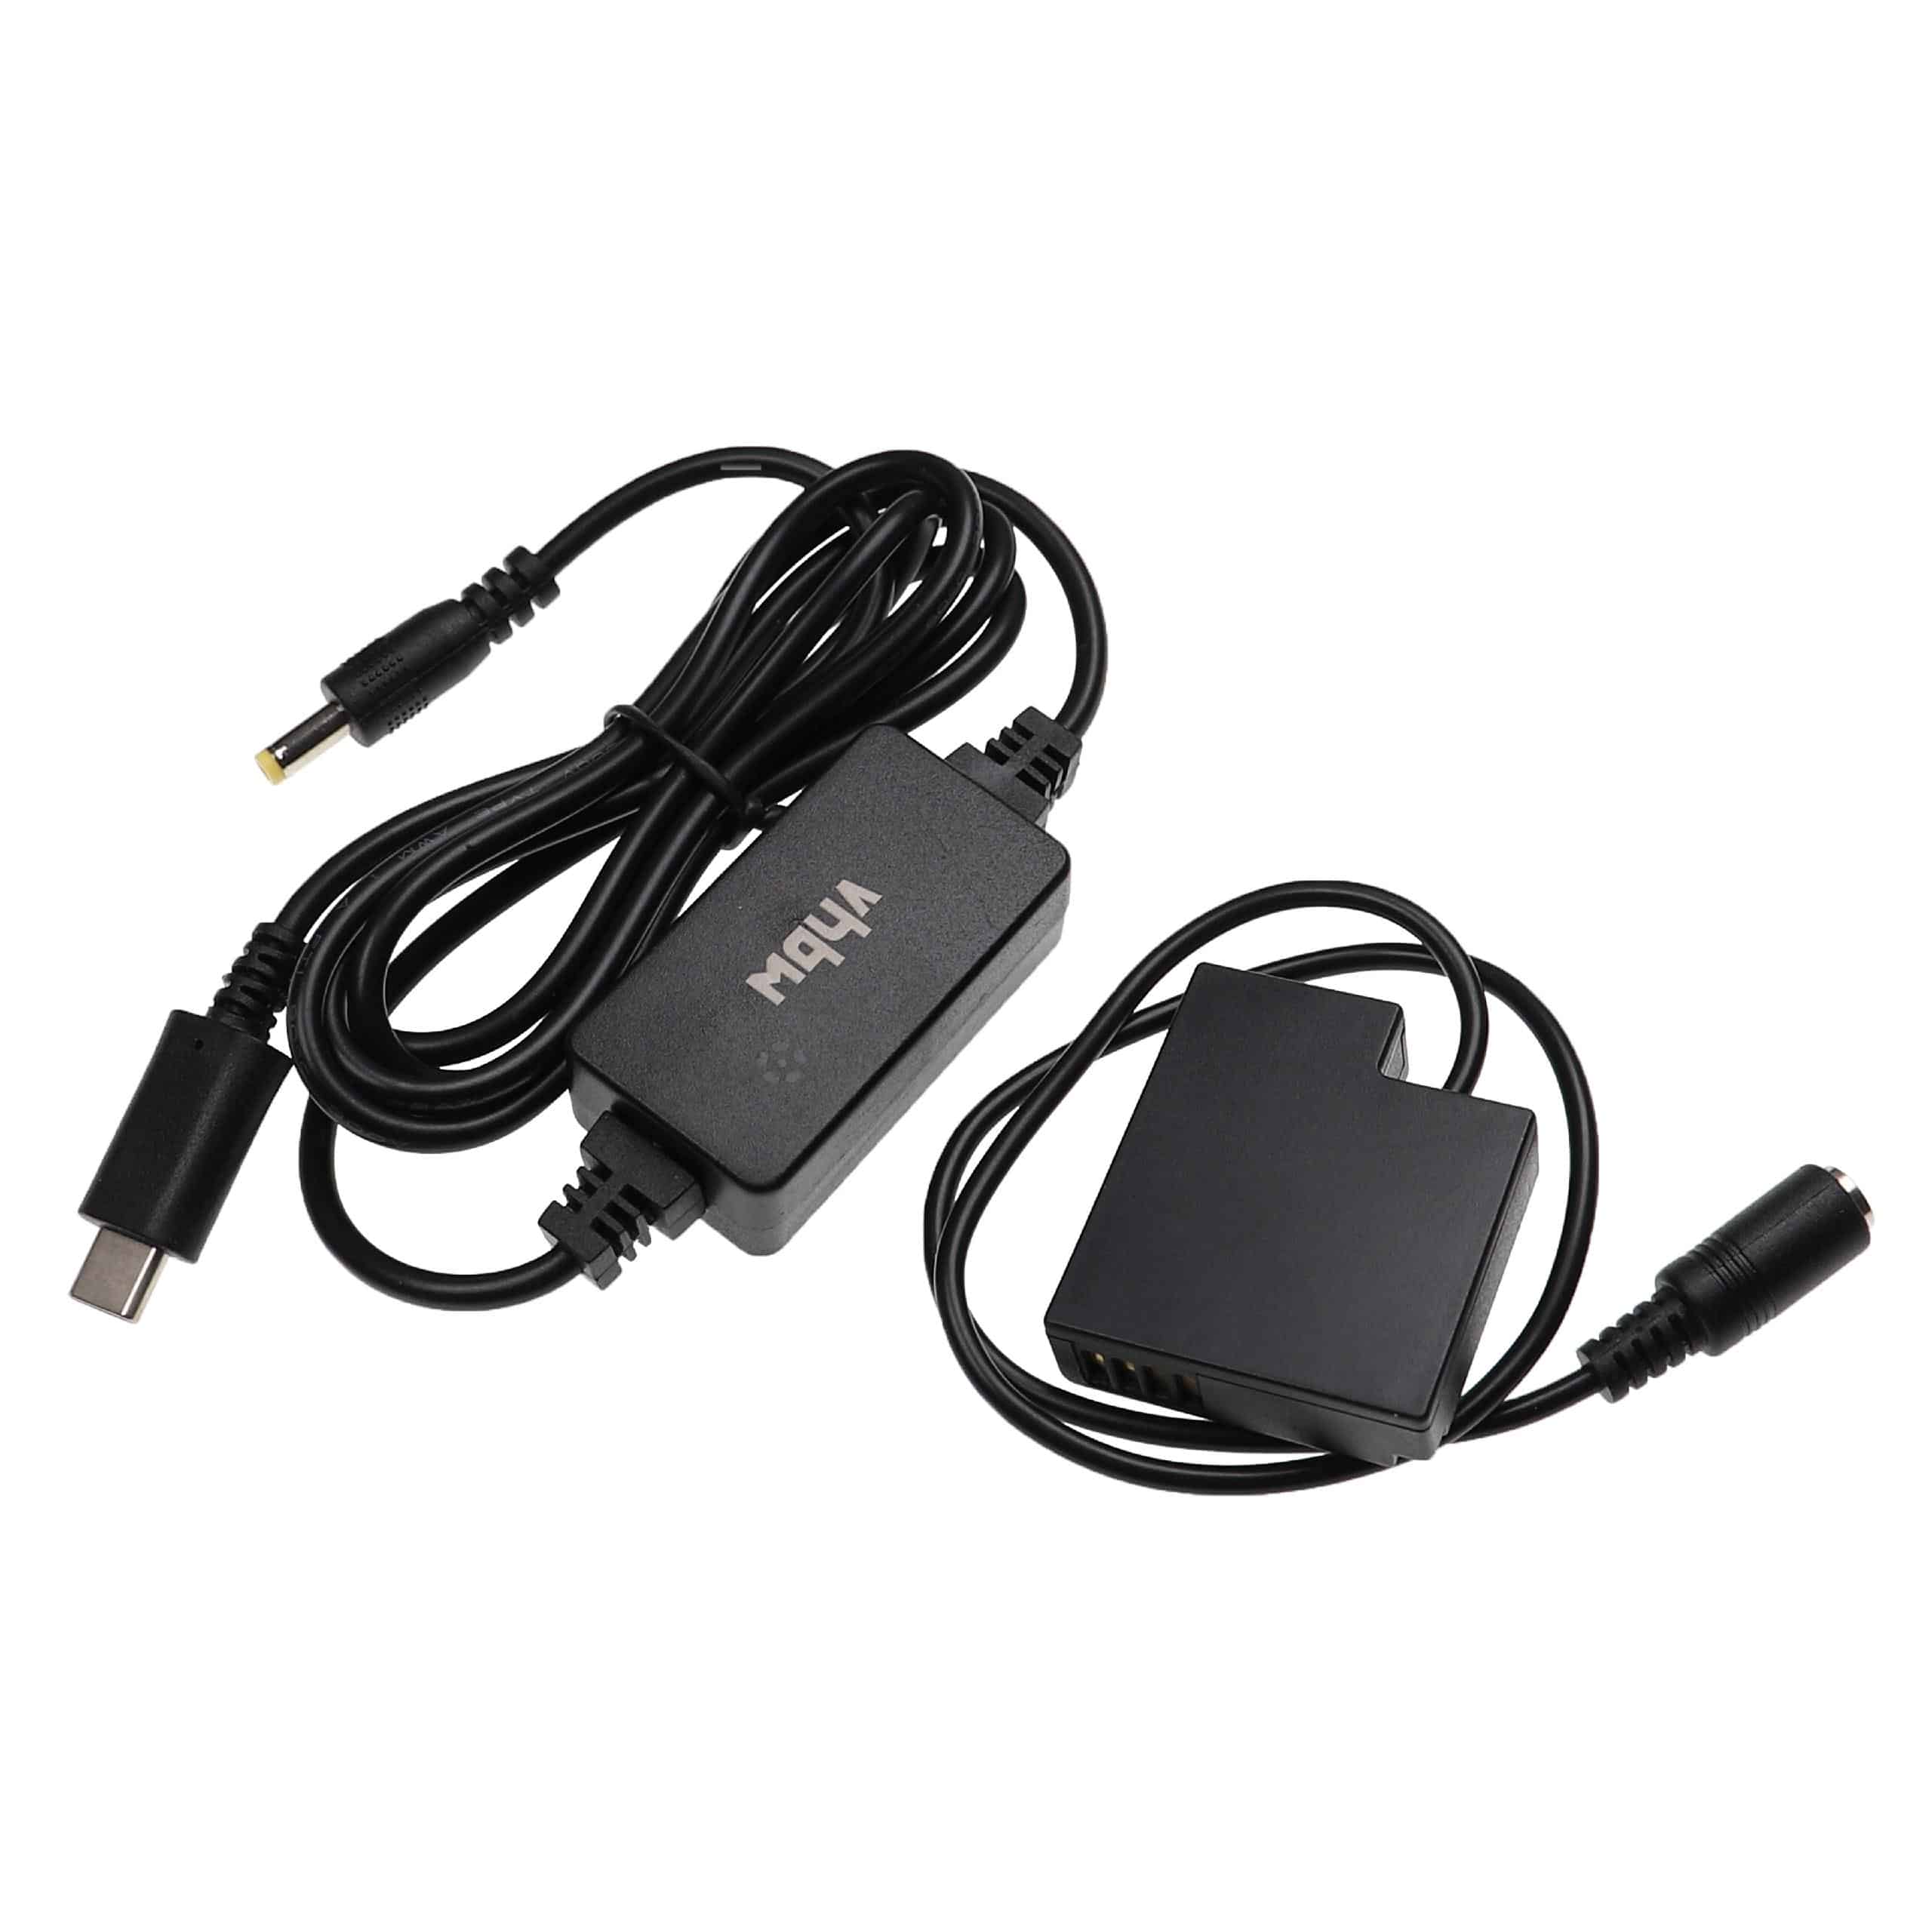 USB Netzteil als Ersatz für Panasonic DMW-AC8 für Kamera + DC Kuppler ersetzt Panasonic DMW-DCC15